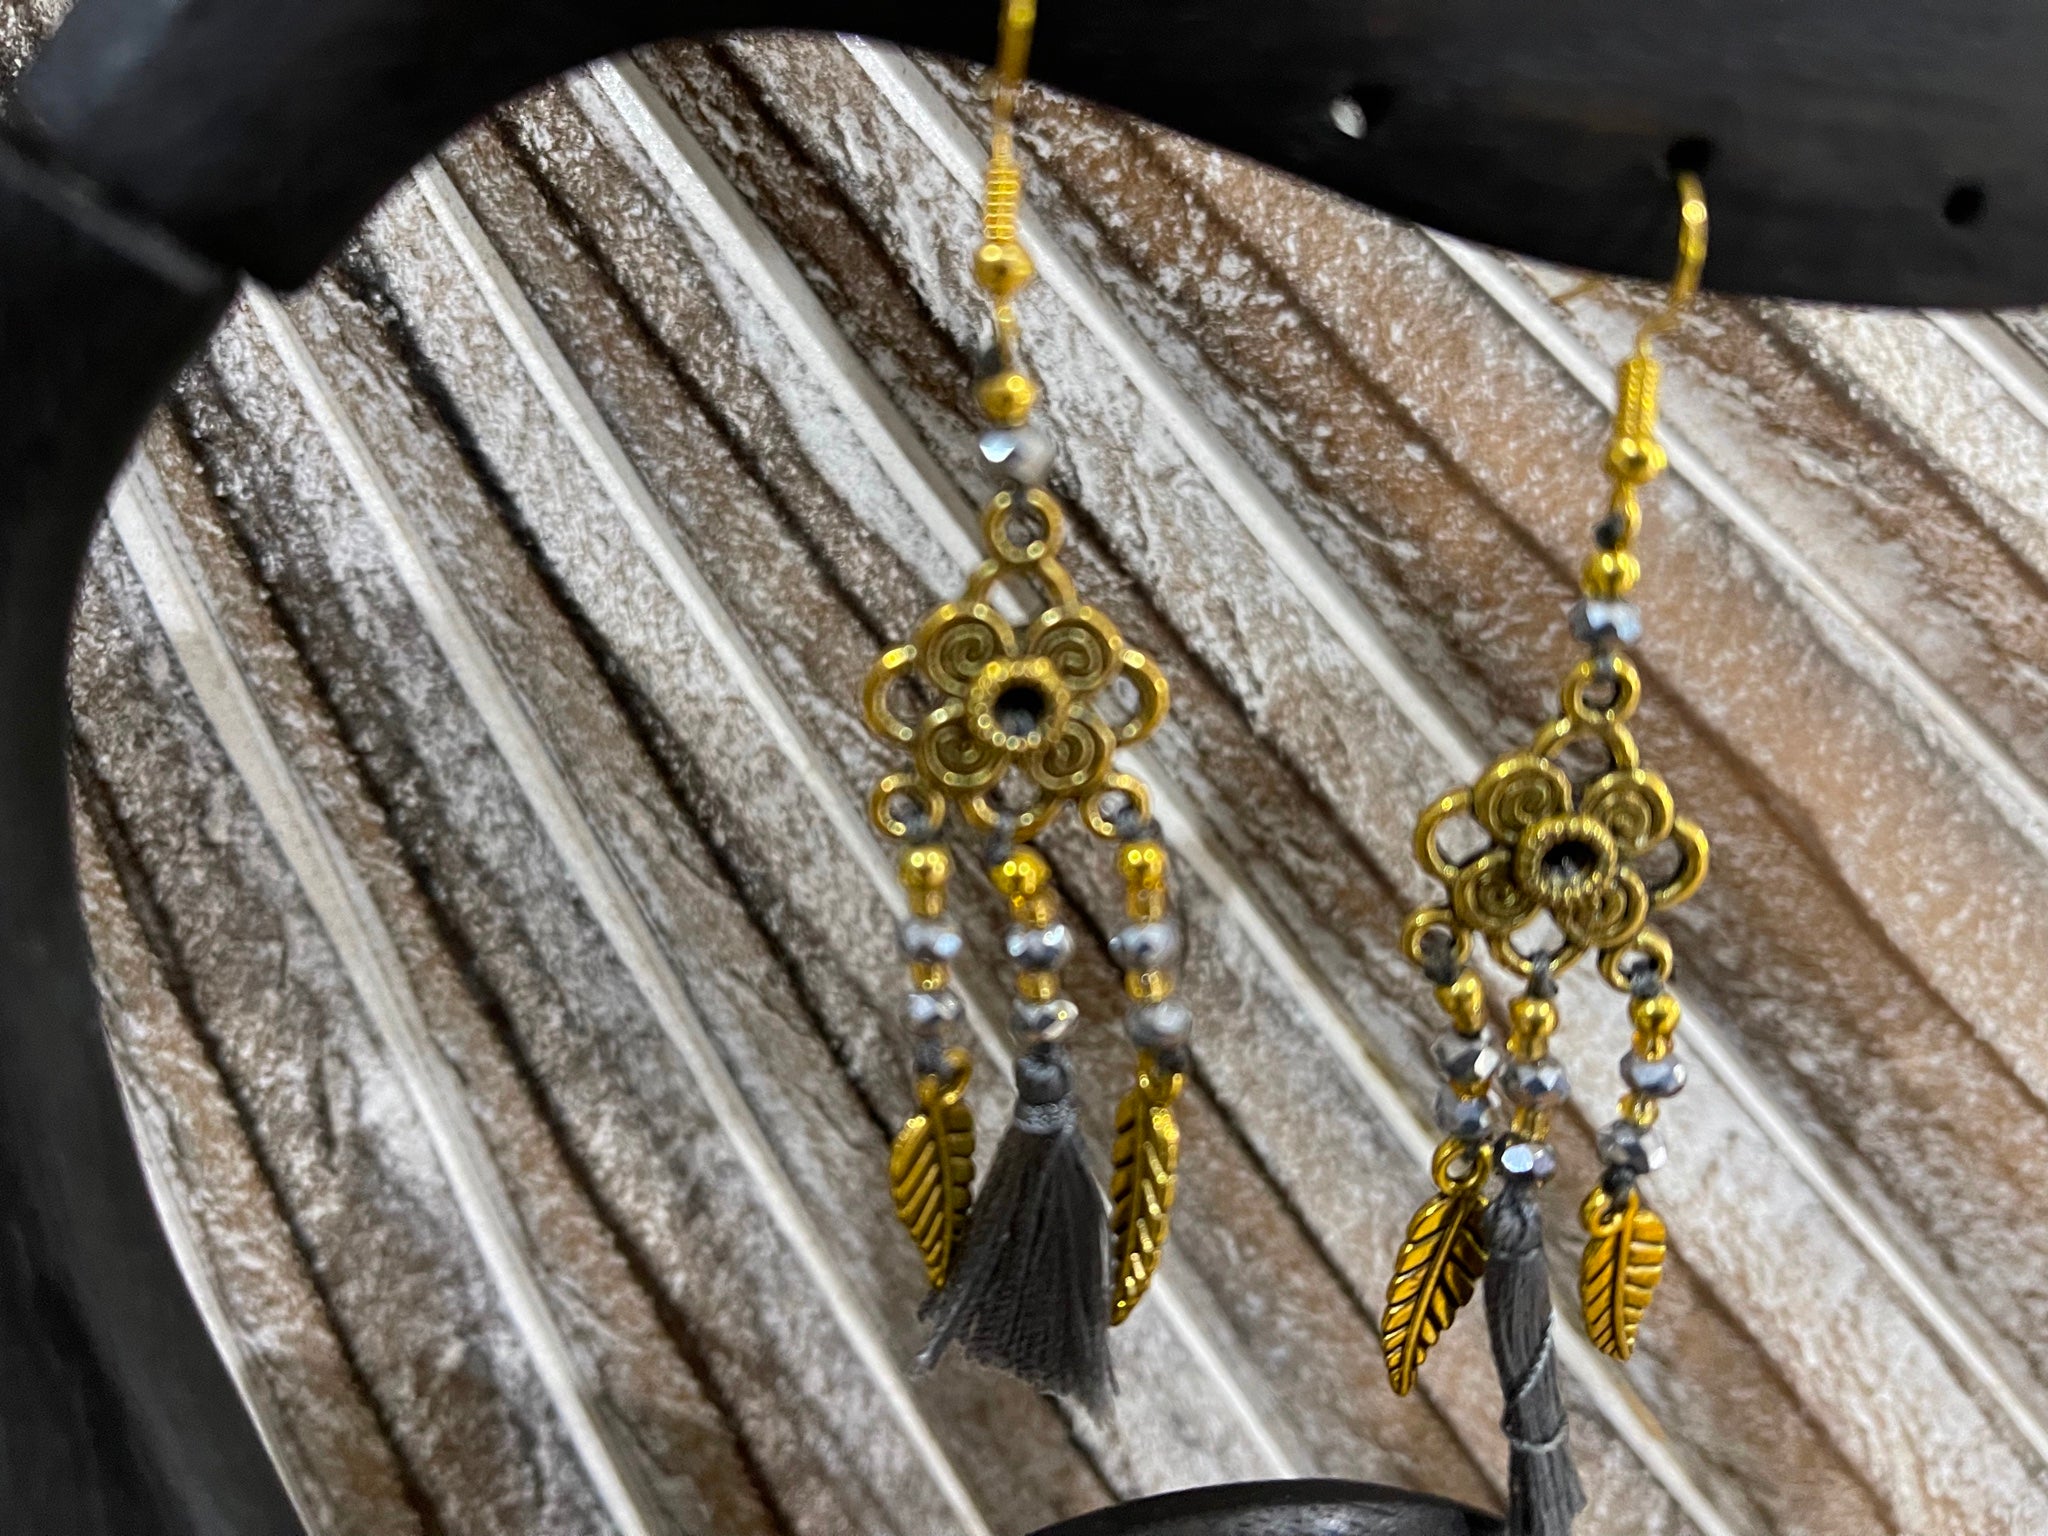 925 Sterling Silver Tear Drop Hook Earrings - Balinese Style